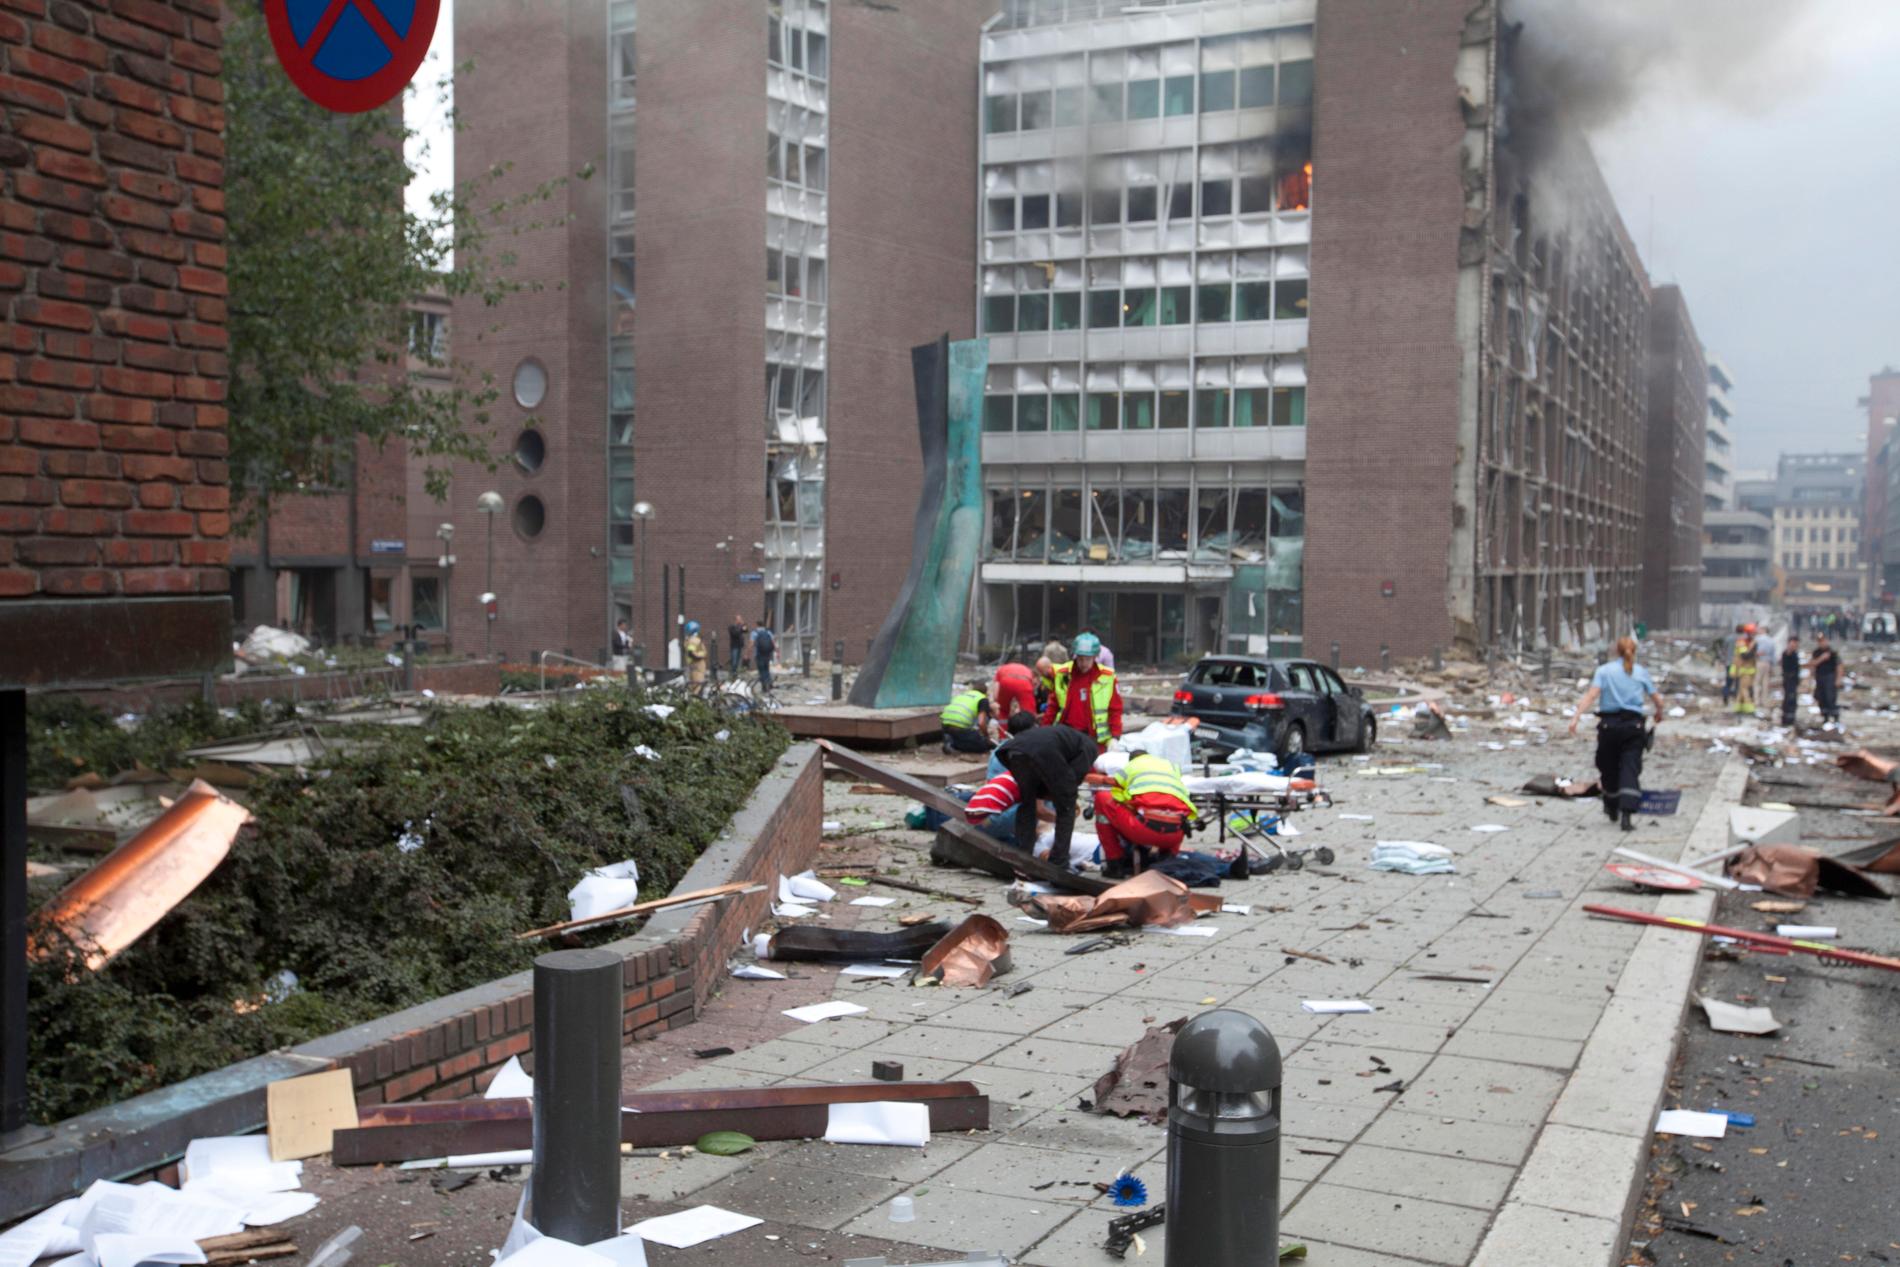 En kraftig explosion i Oslo har skadat flera personer och förstört byggnader i regeringskvarteren. 